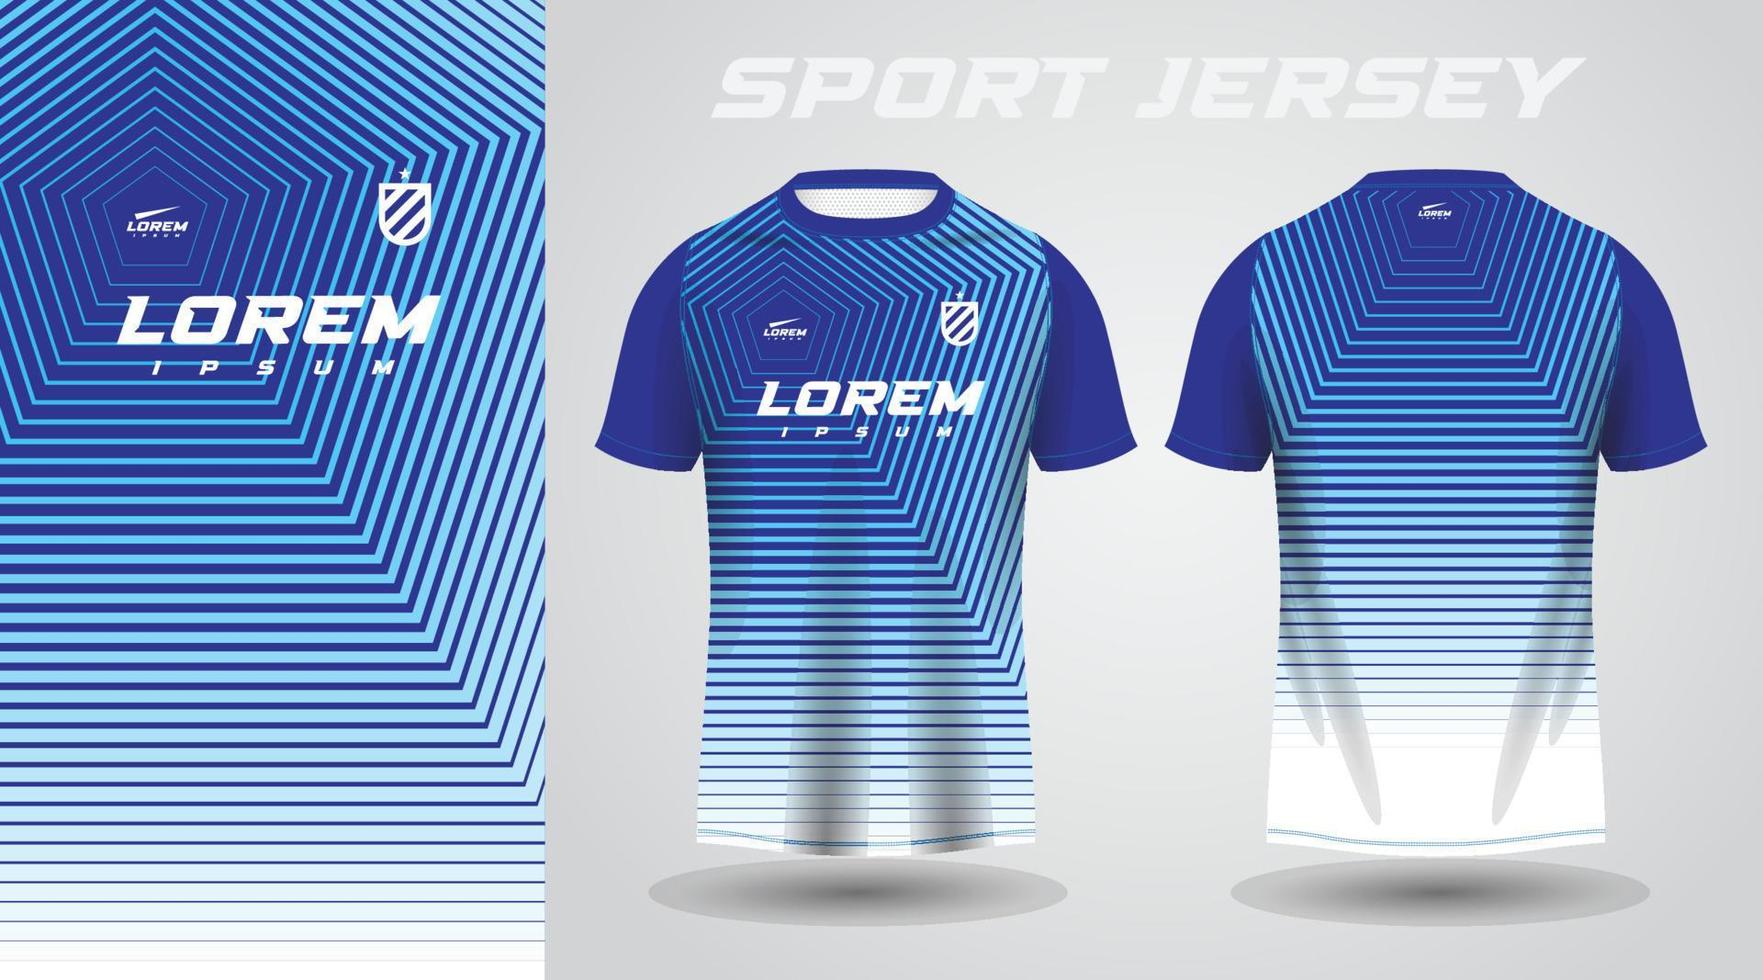 blue shirt sport jersey design vector